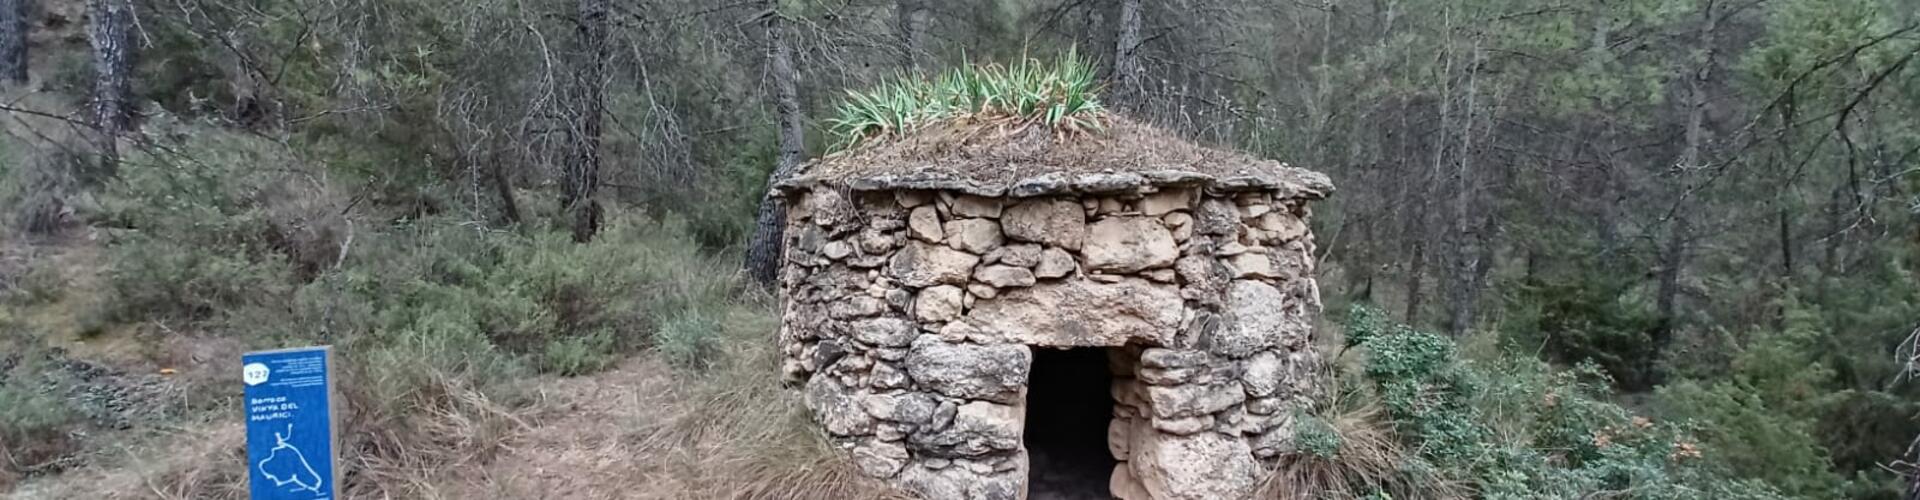 Barraques de pedra seca de can Tardà. Castellilí